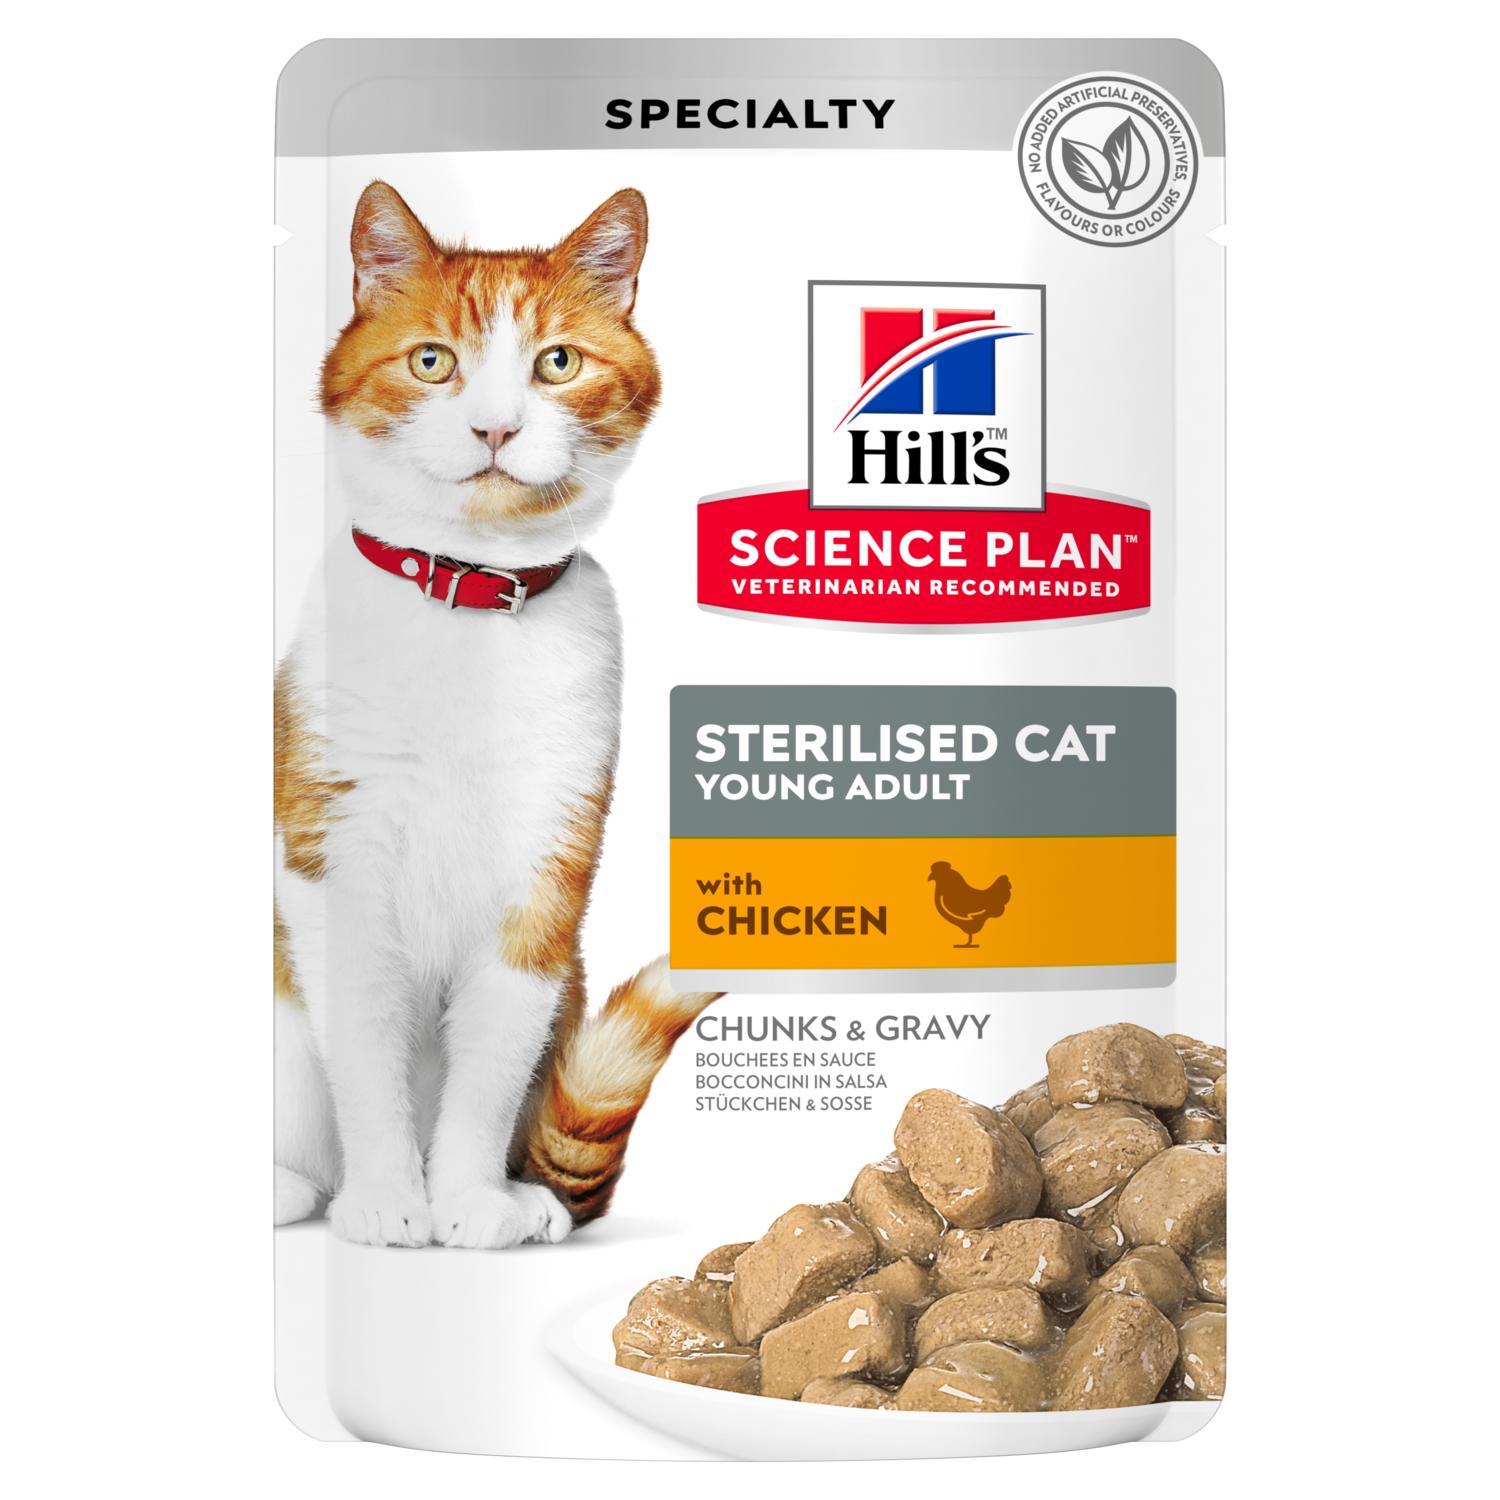 Хиллс для кошек стерилизованных сухой купить. Хилс для котов стерилизованных корм Хиллс. Хиллс пауч для кошек. Хиллс корм для кошек Эдалт. Хиллс влажный корм для кошек.